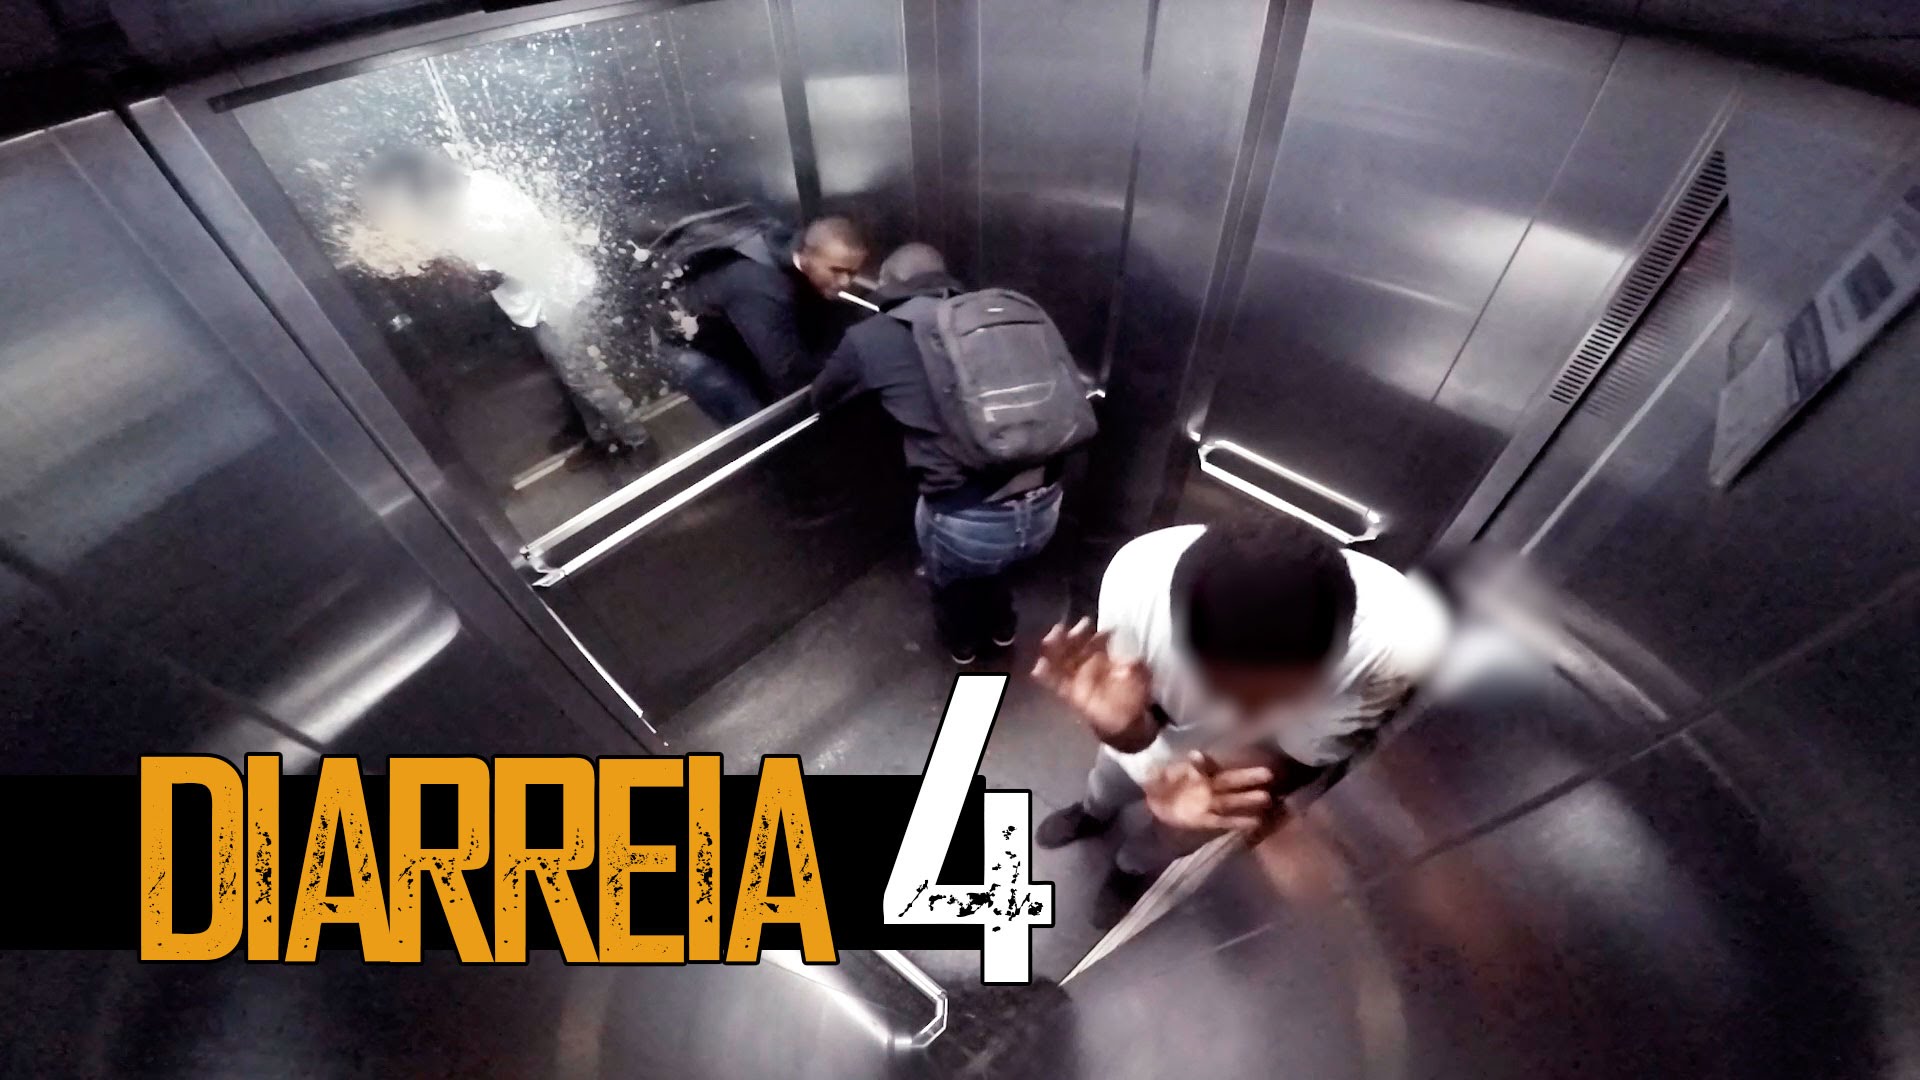 VIDEO: Tas moments, kad svešiniekam liftā sākas caureja… (Diarrhea in the elevator!)